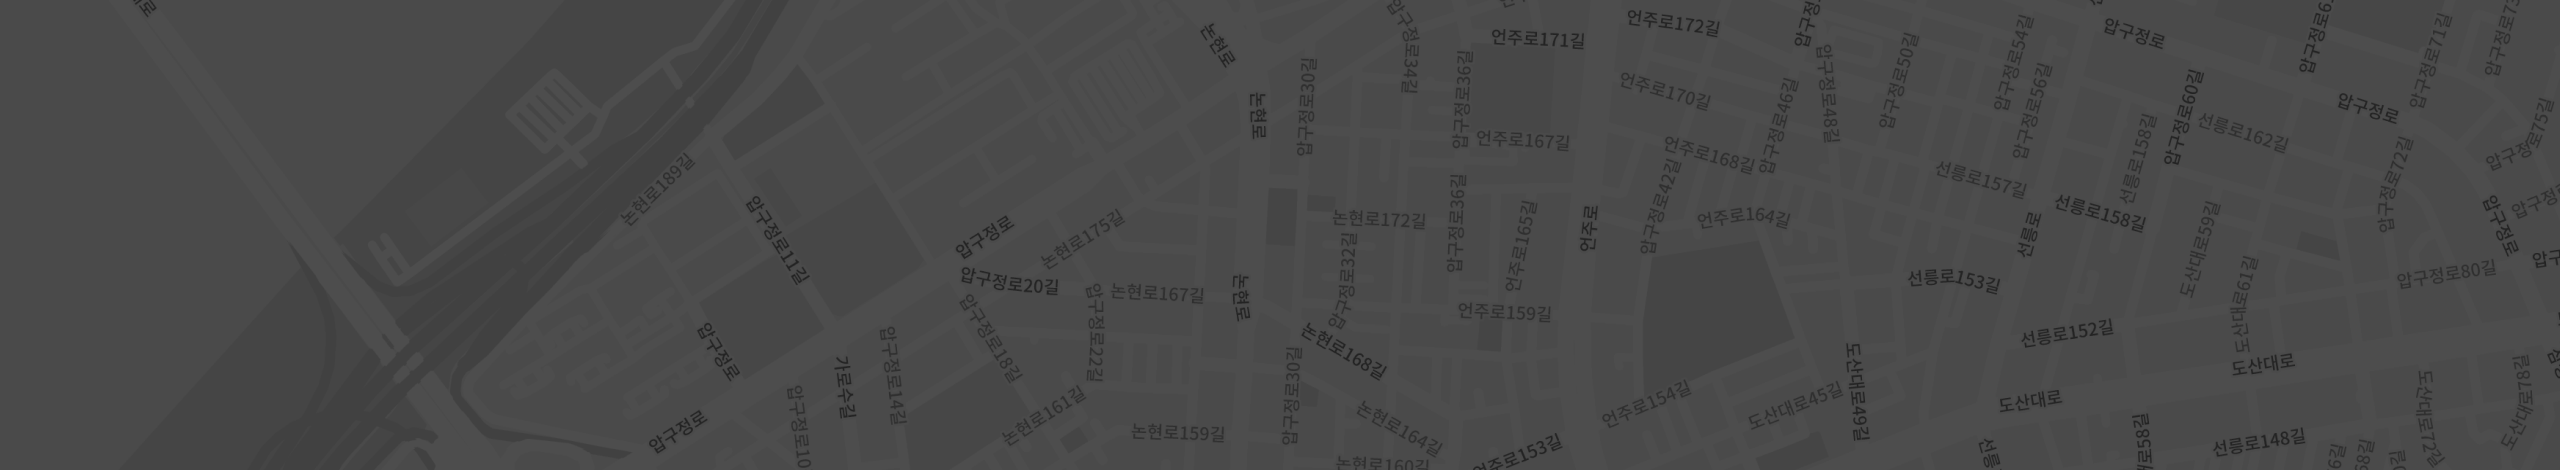 안다즈 서울 강남의 위치는 강남구 논현로 854 안다즈 서울강남 1층입니다.